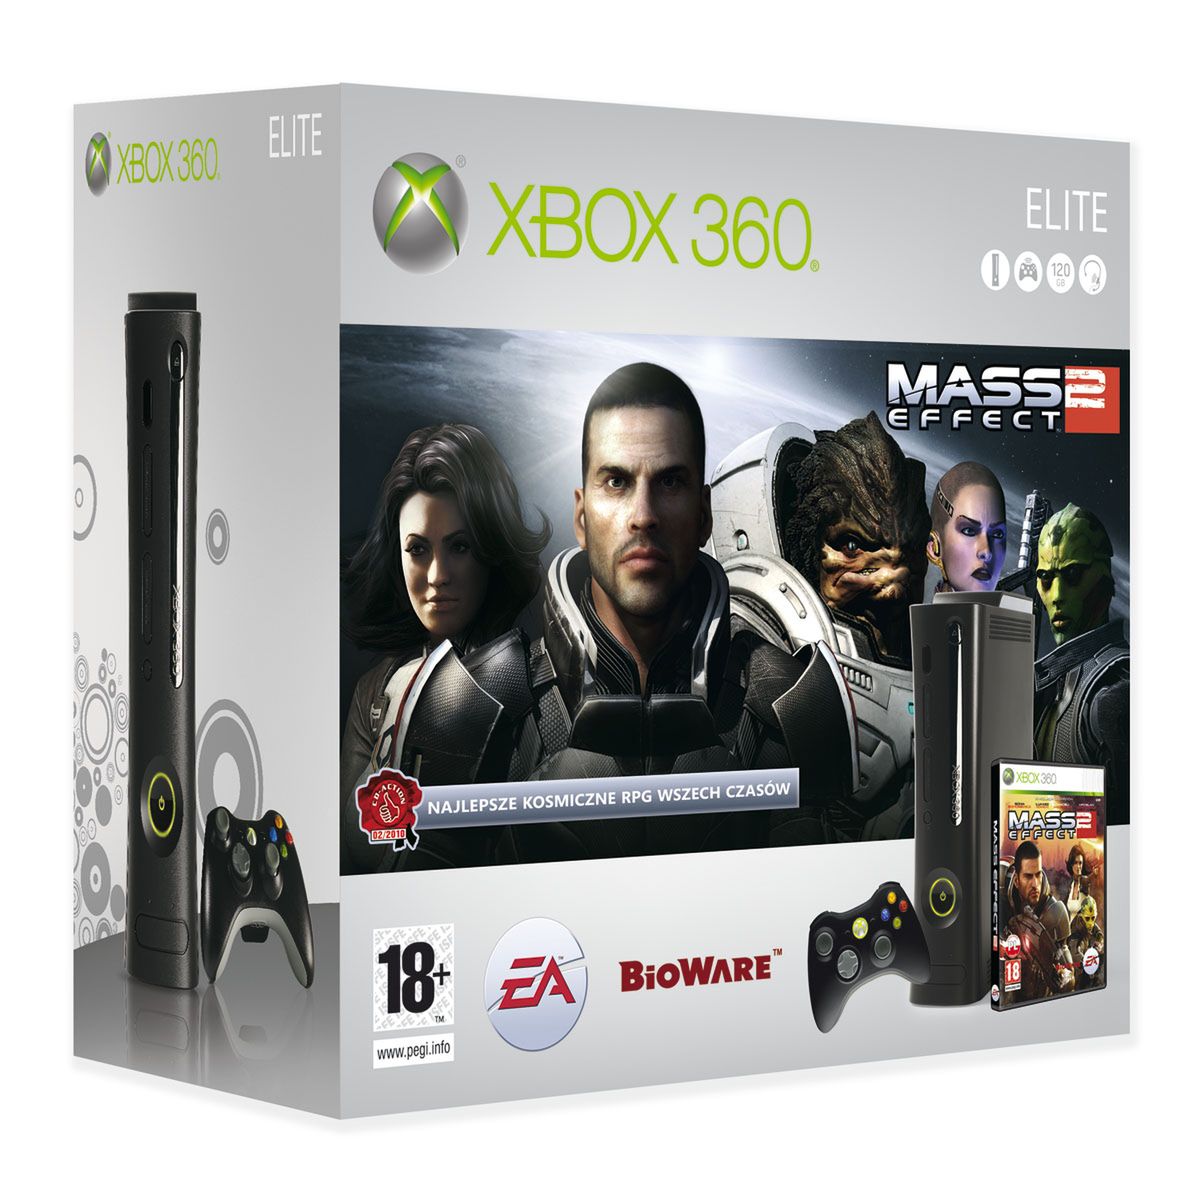 Pojawi się zestaw Xbox 360 z Mass Effect 2